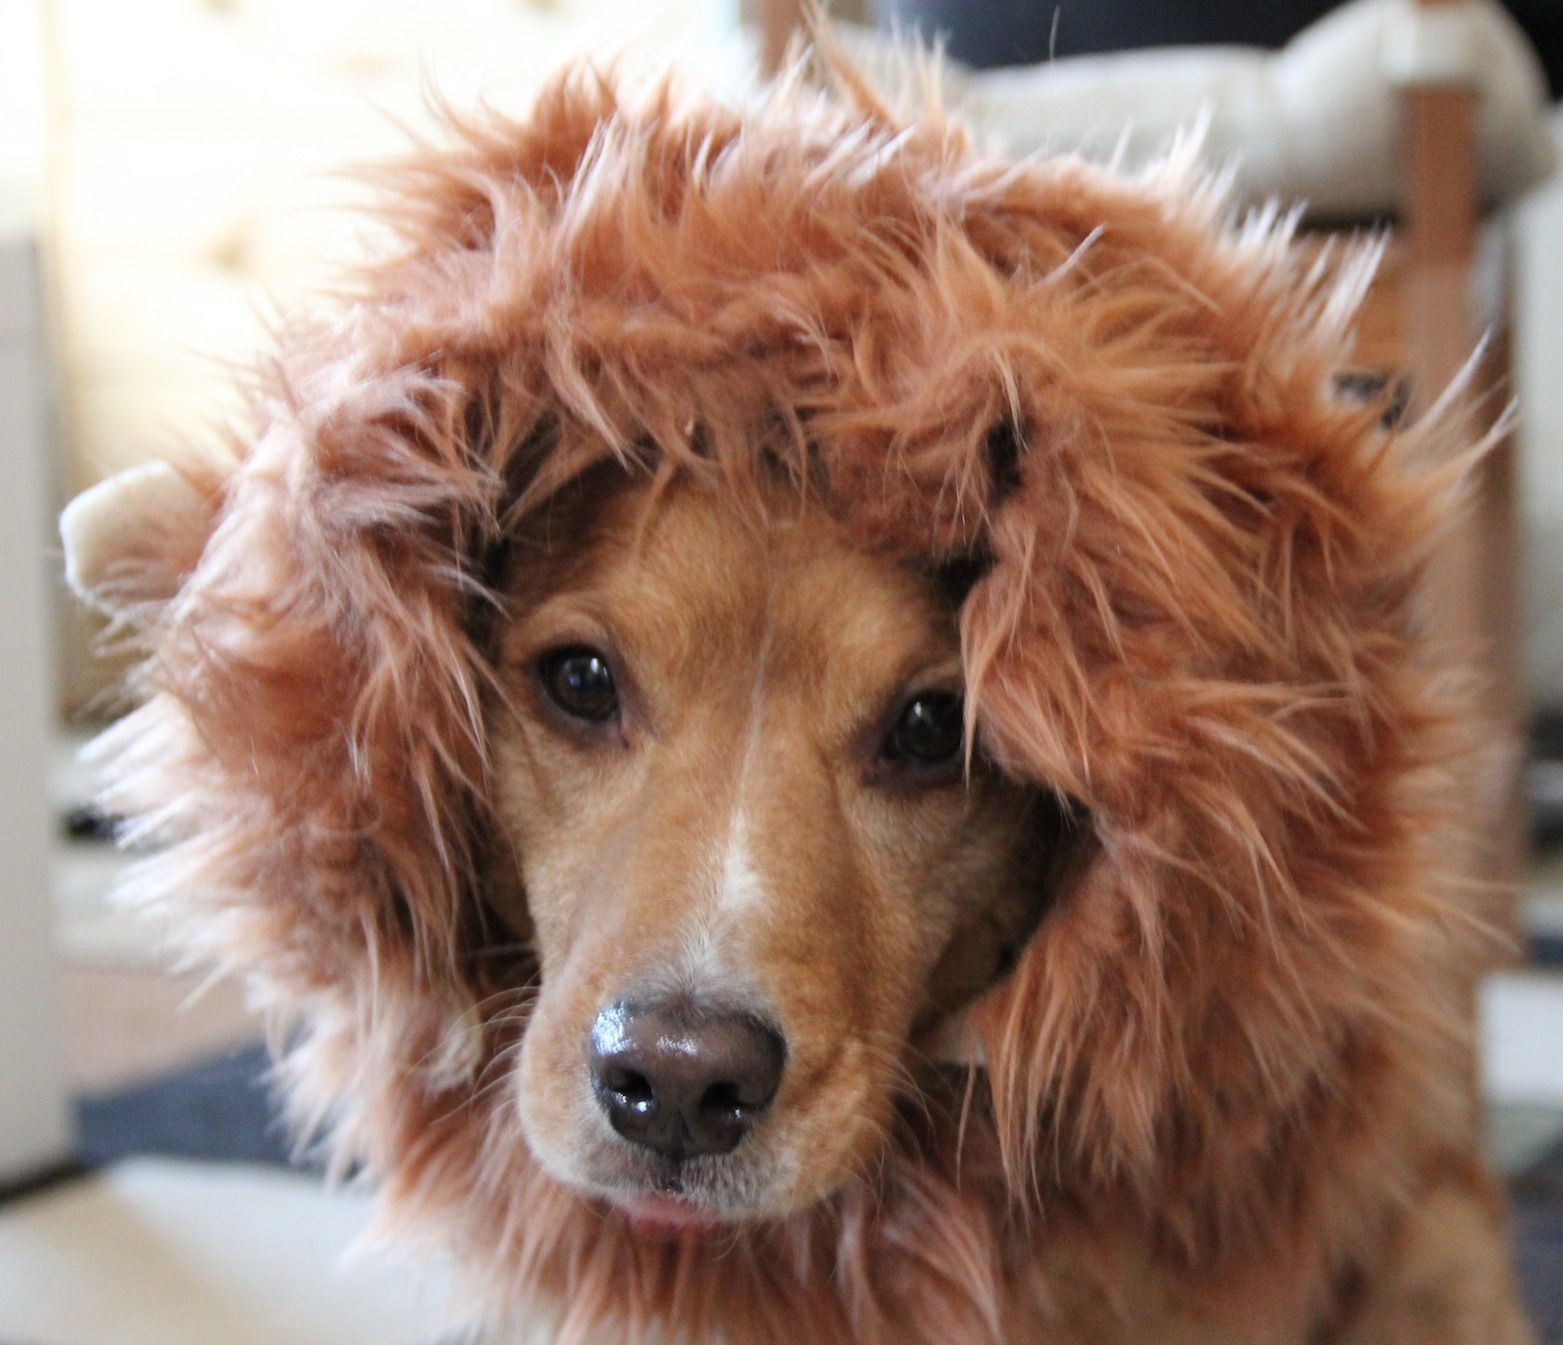 DIY Lion Mane For Dog
 How to Make a Lion Mane Dog Costume Version 2